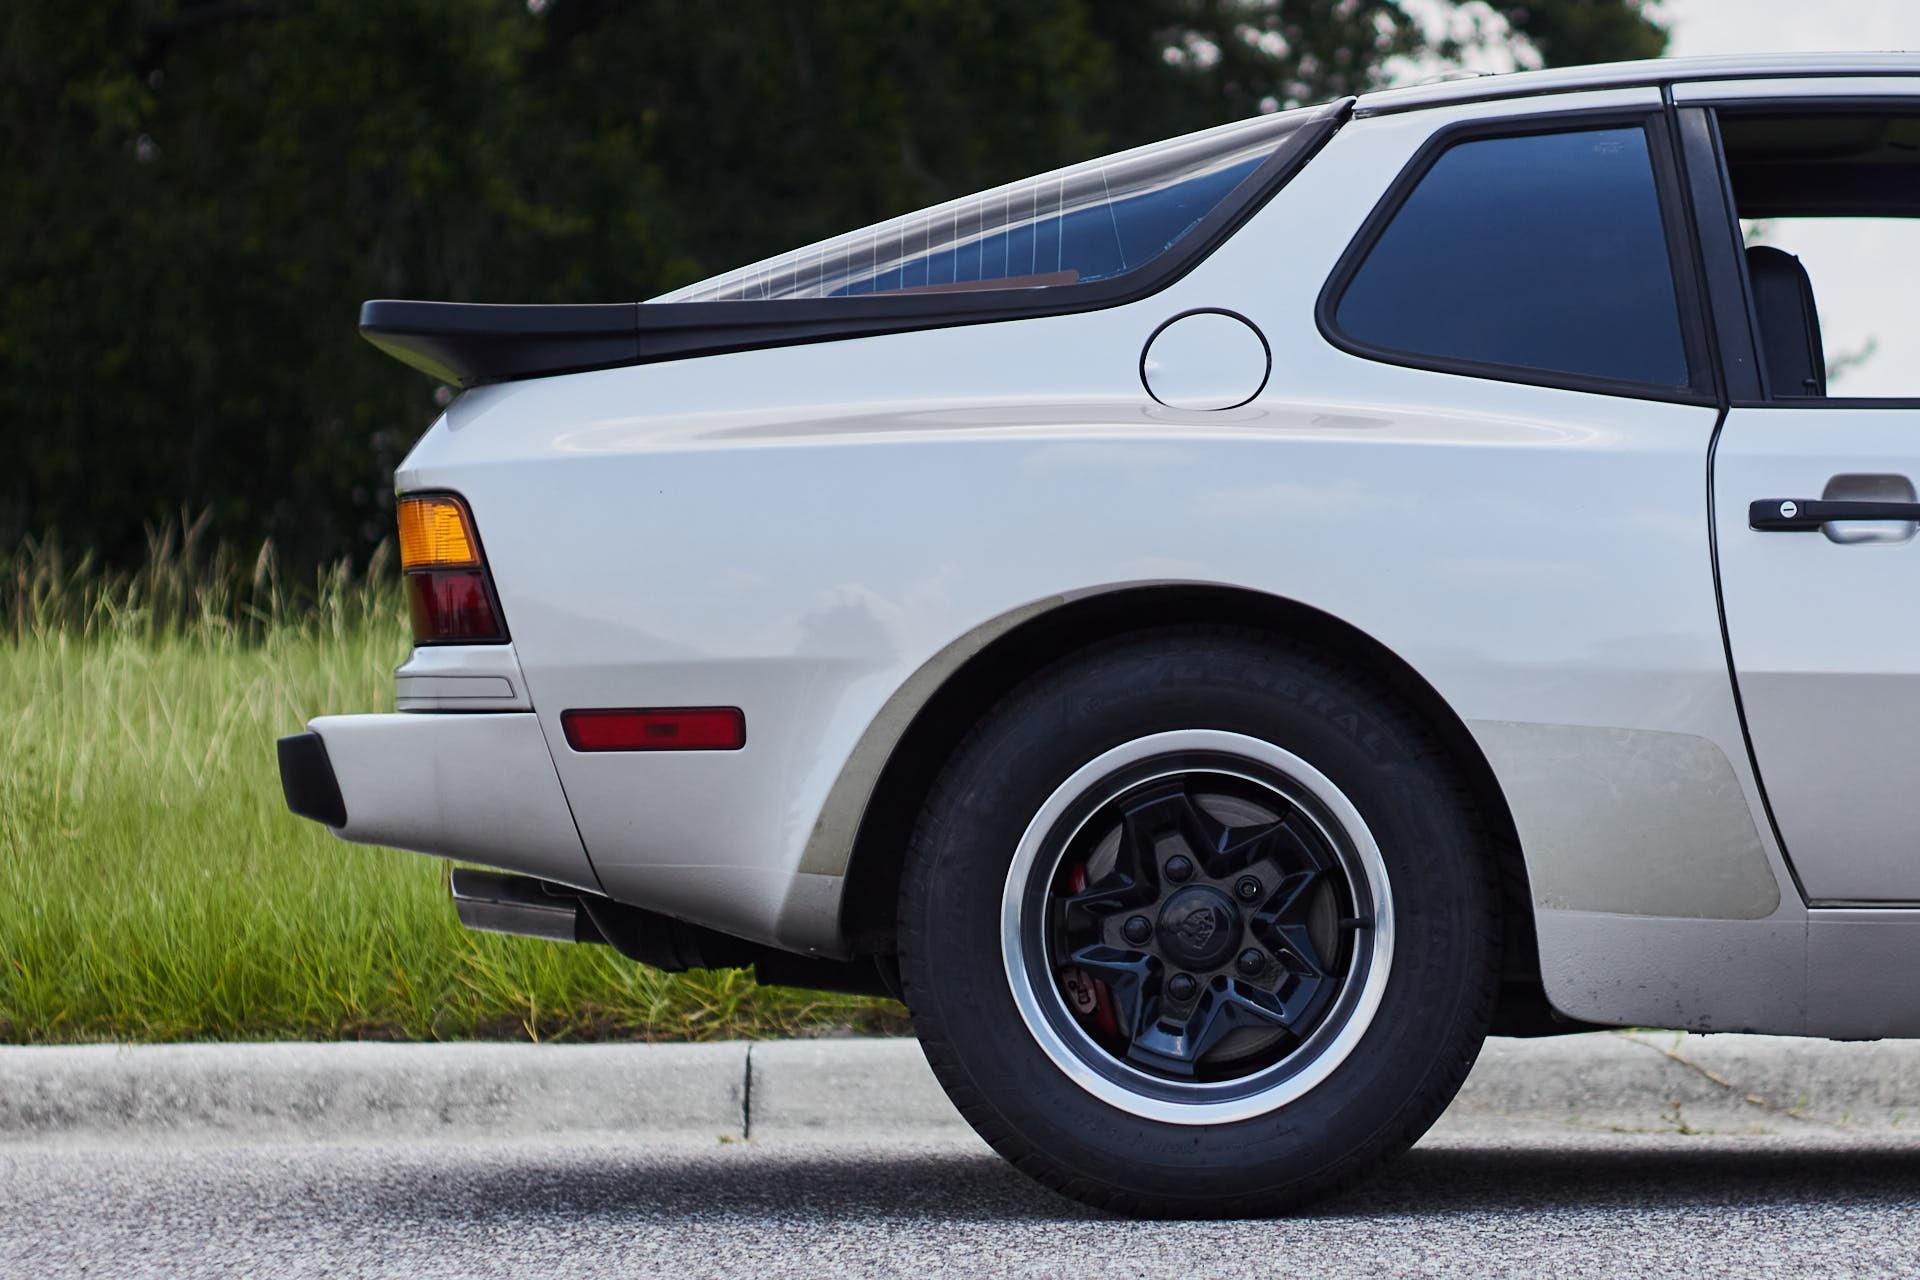 1984 PORSCHE 944 Coupe - $28,984